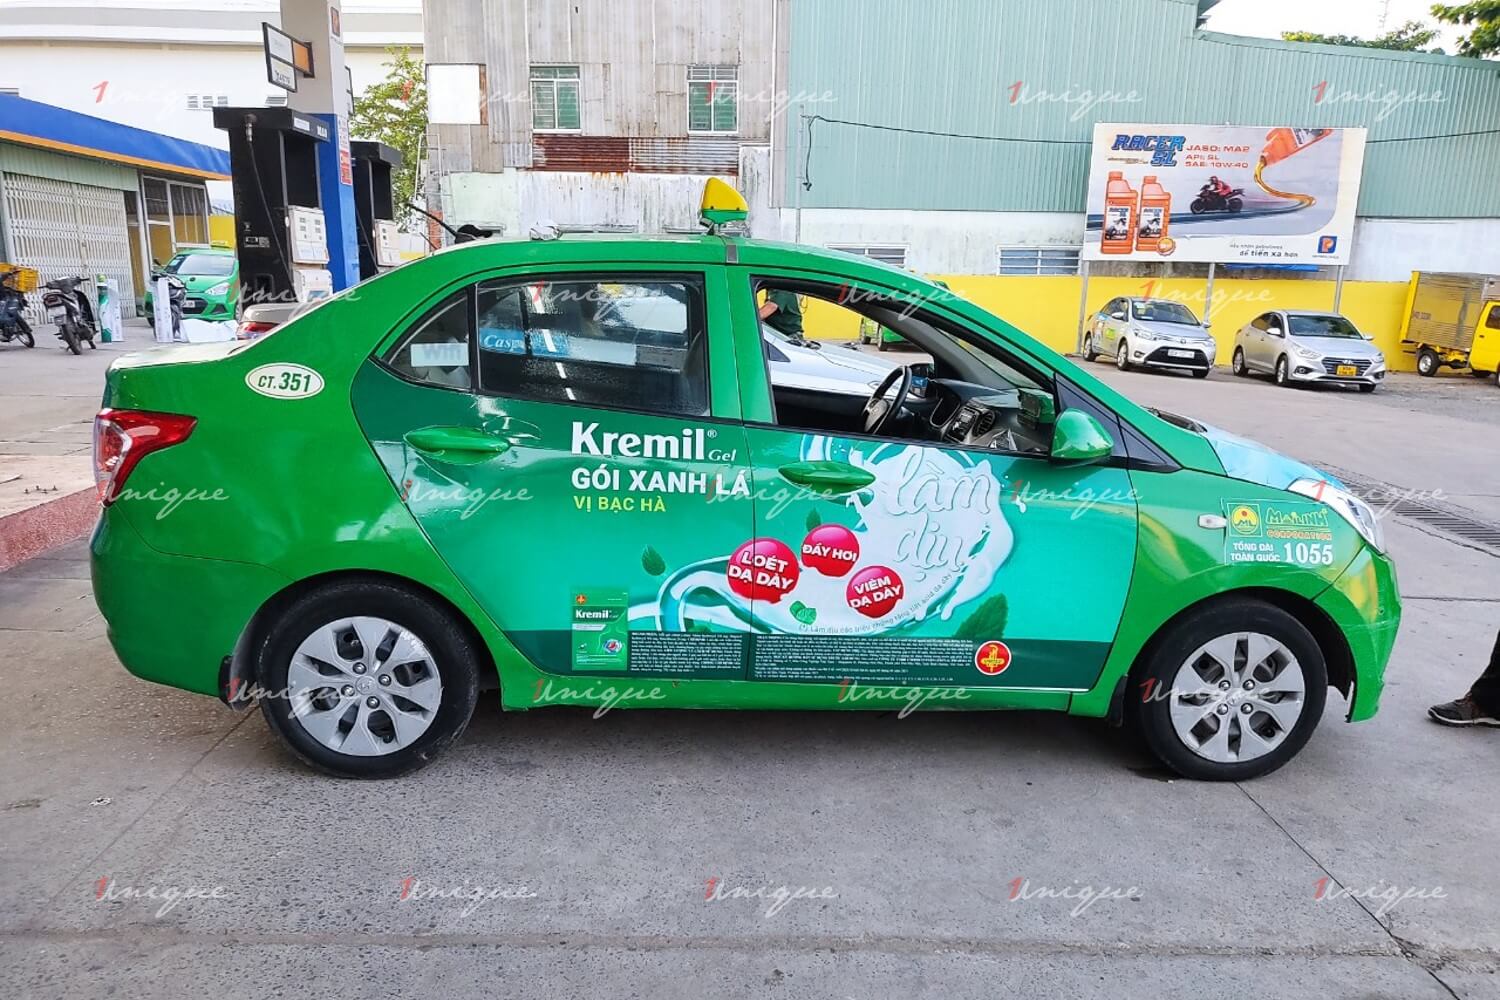 Chiến dịch quảng cáo trên xe taxi siêu khủng của thuốc dạ dày Kremil